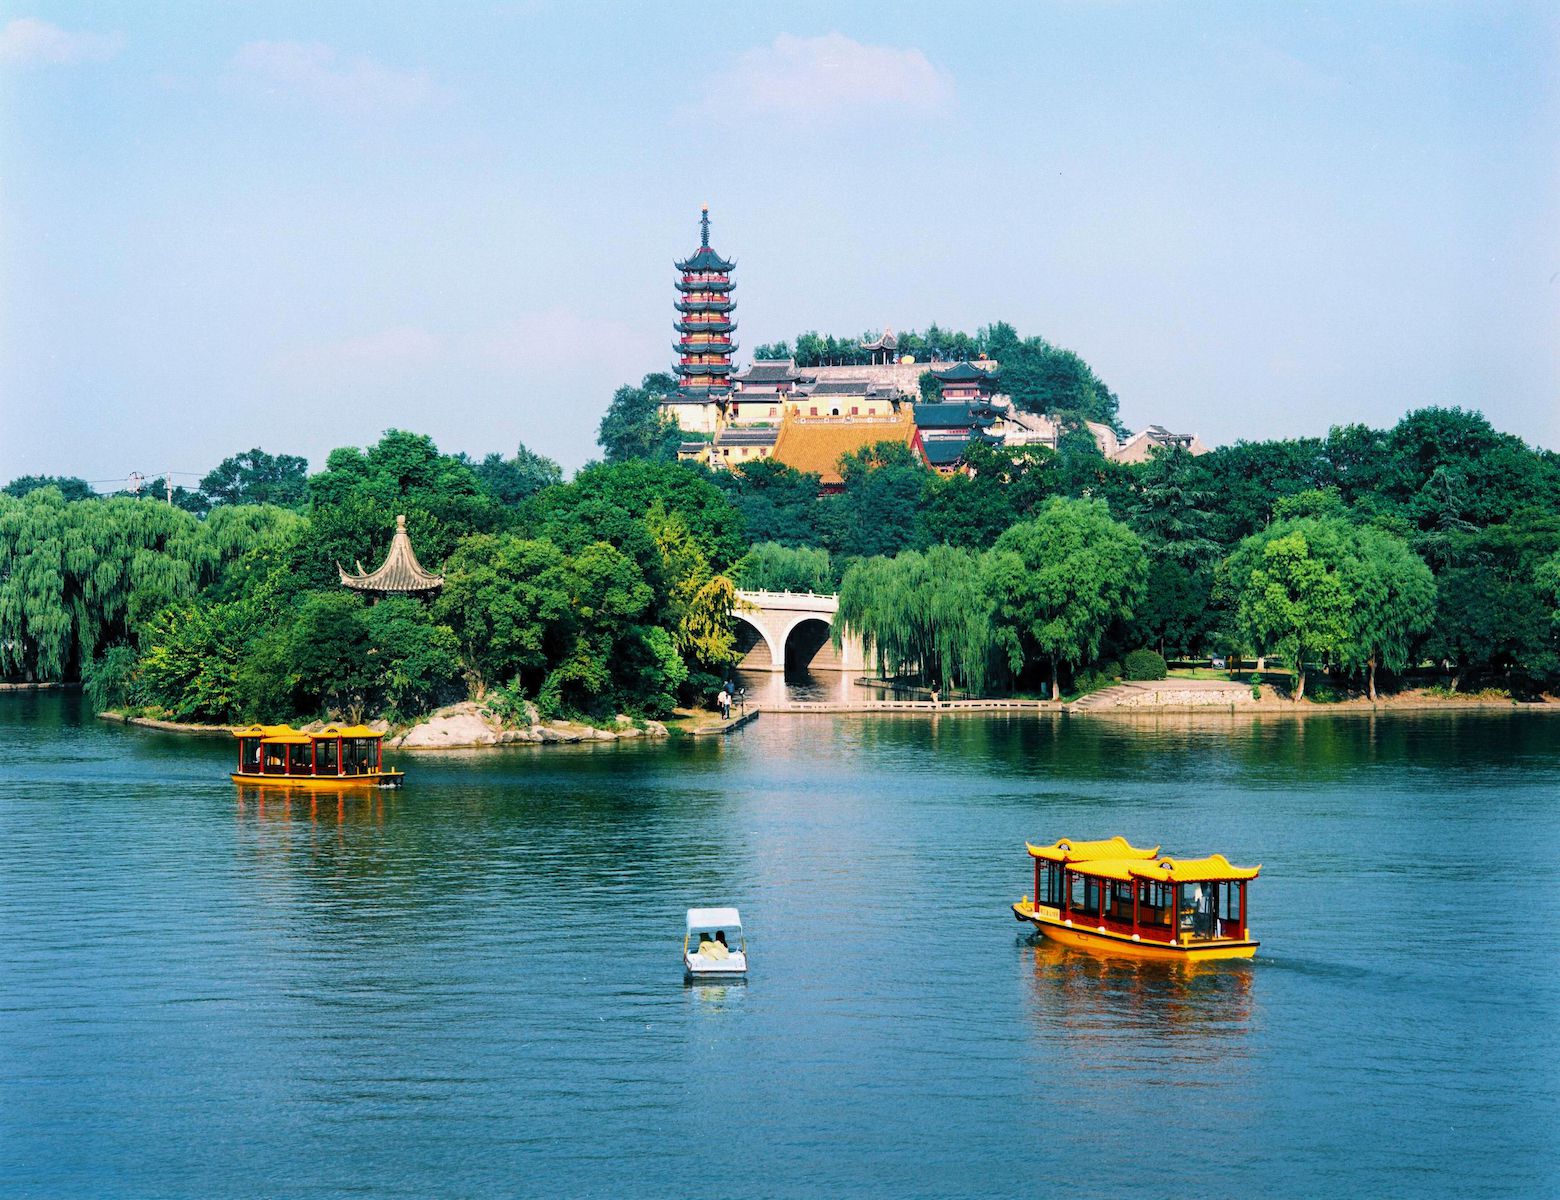 镇江作为商业都市迅猛发展的同时,风光明媚的街道和风景吸引了历代的